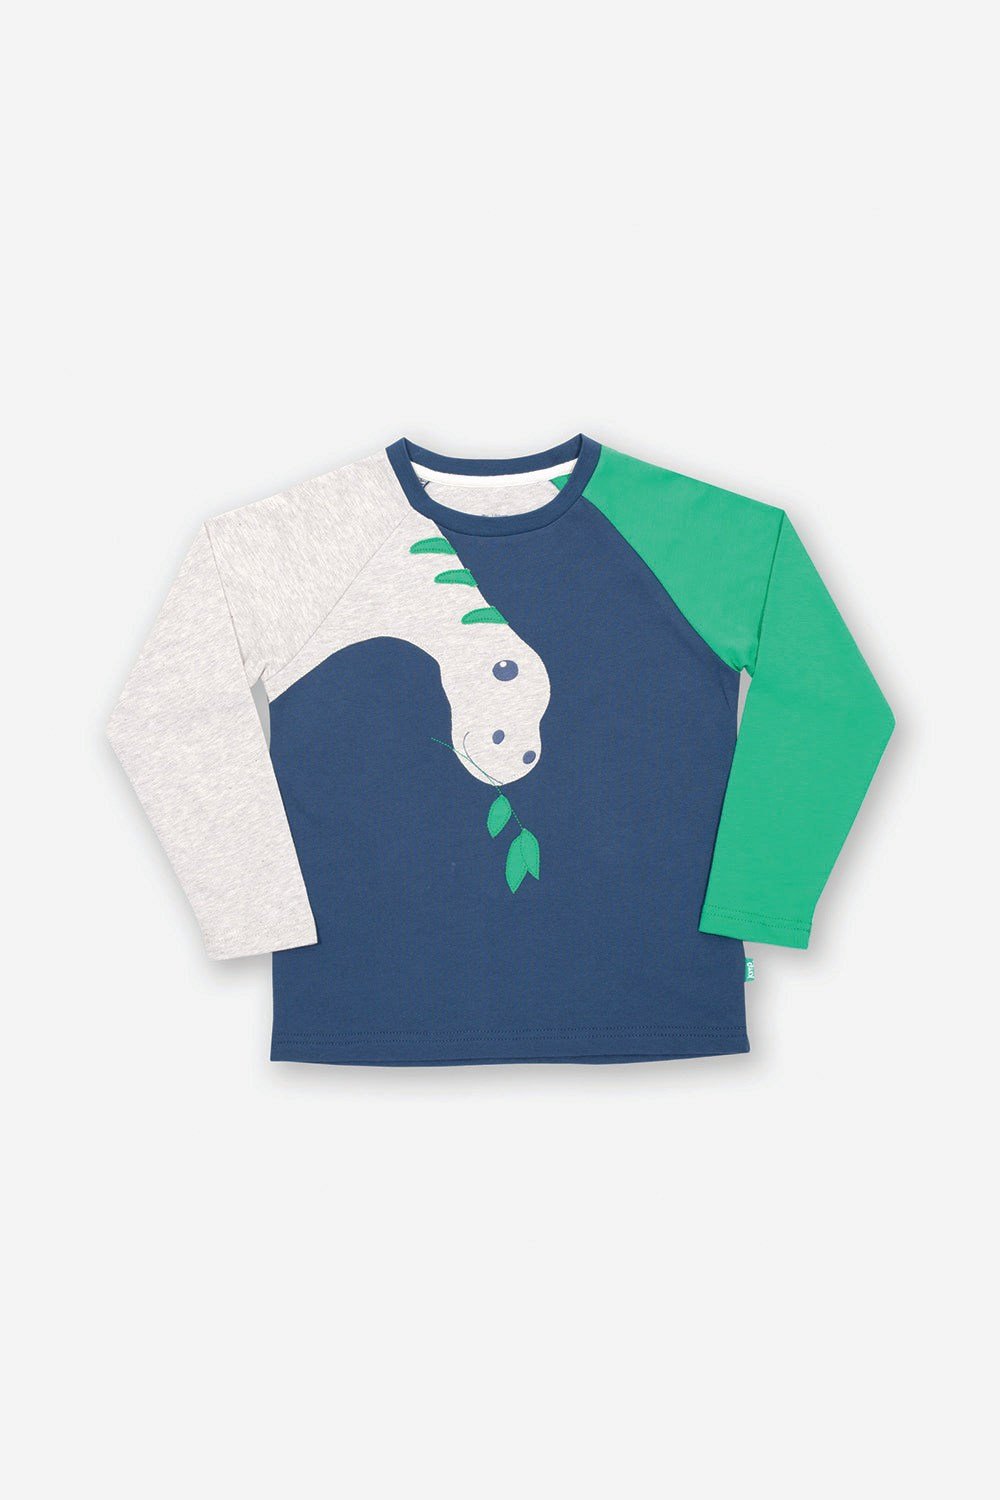 Dino Munch Baby/Kids Organic Cotton T-Shirt -